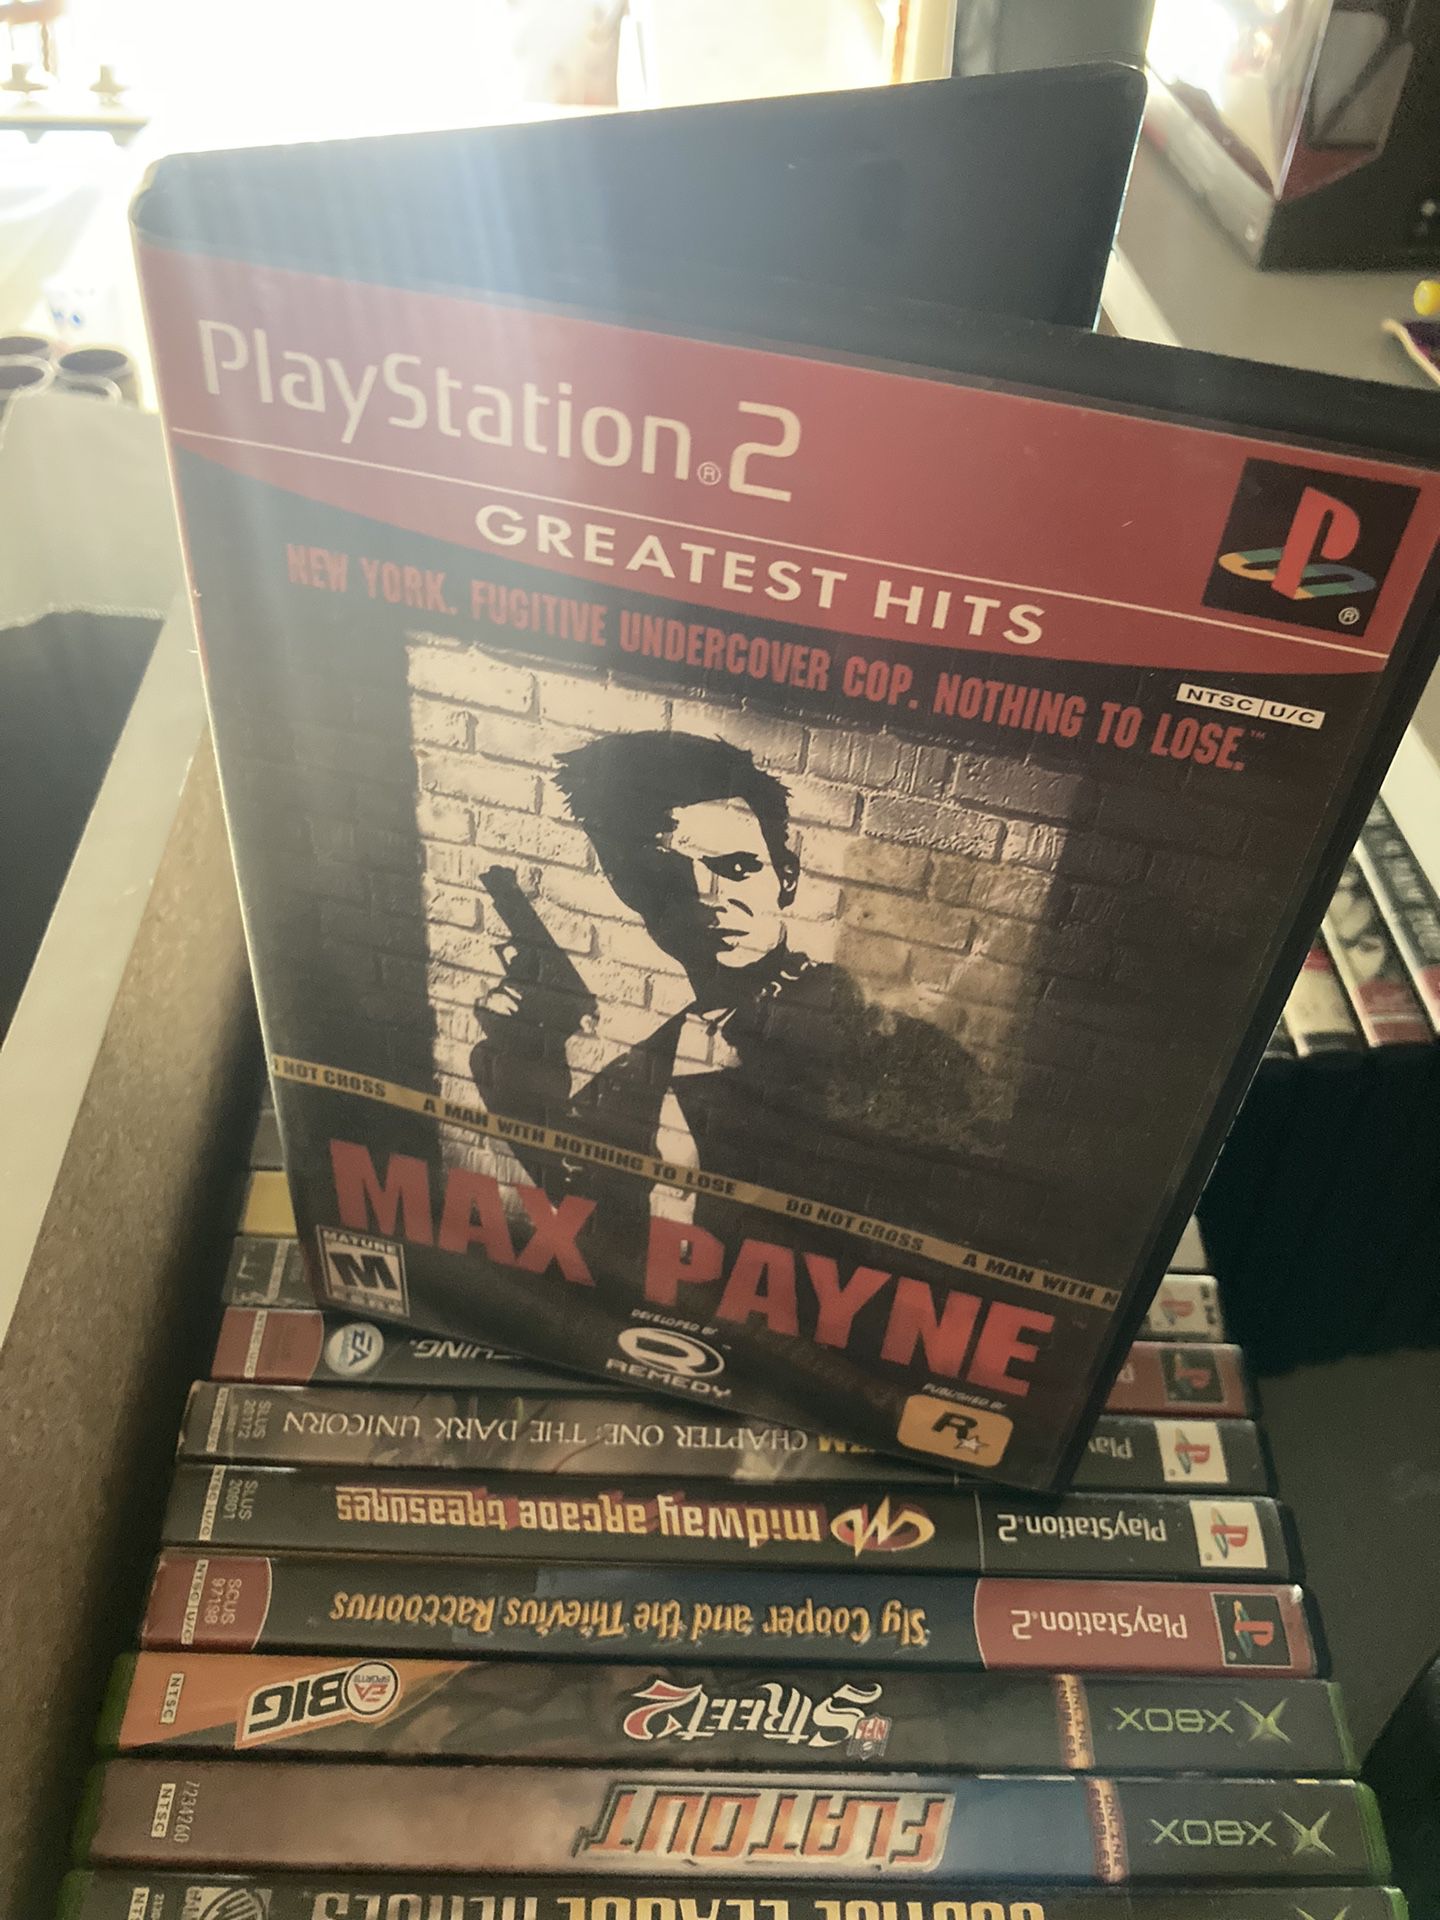 Max Payne PS2 